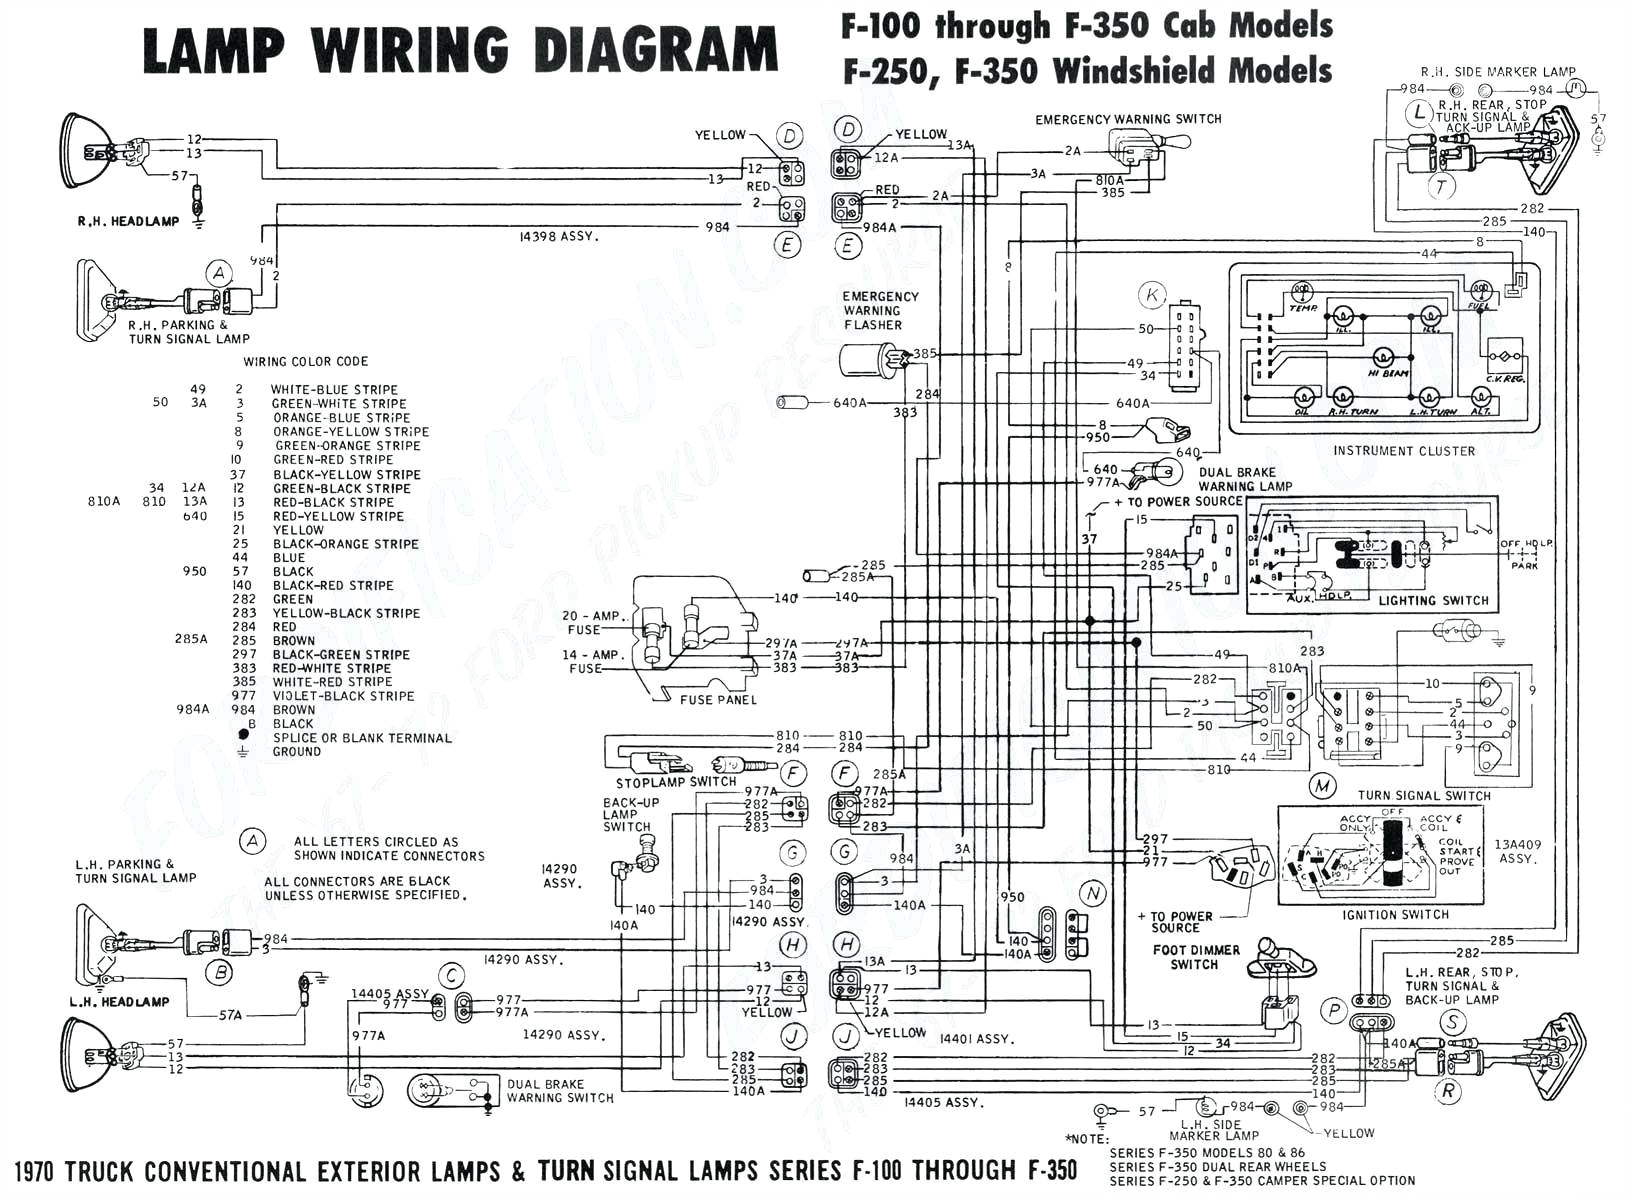 jayco trailer plug wiring diagram fresh 2006 jayco rv wiring diagram plete wiring diagrams